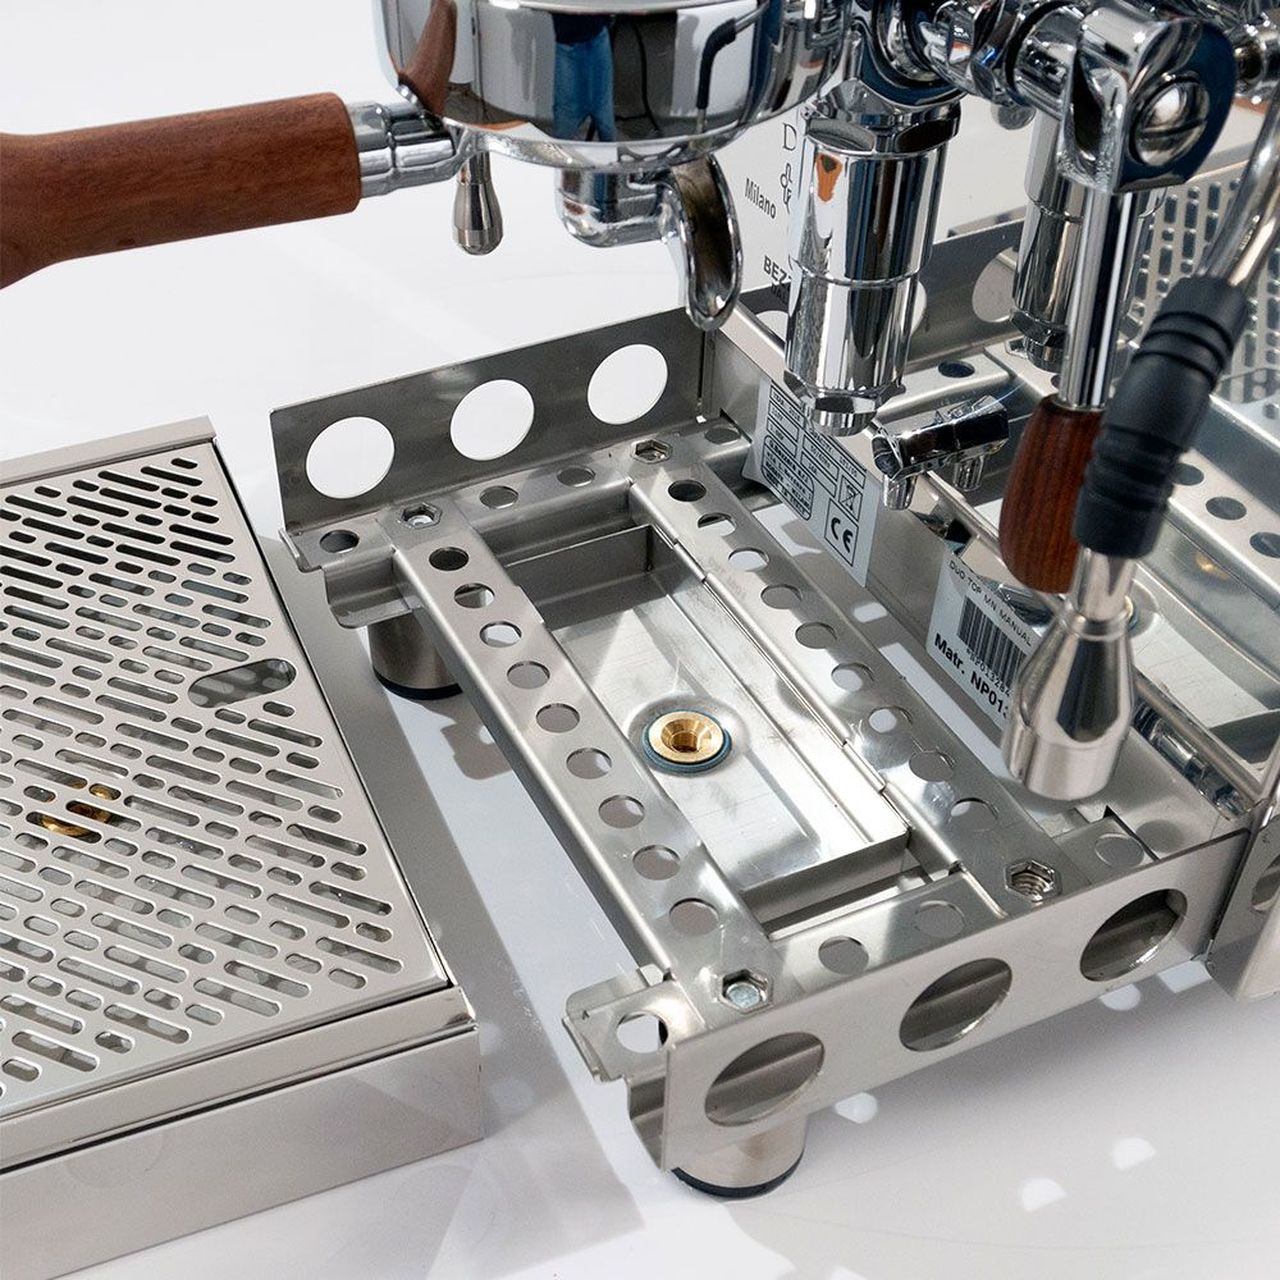 Bezzera Duo e61 Double Boiler PID 0.45/1.0 L Rotary Pump Espresso Coffee Machine